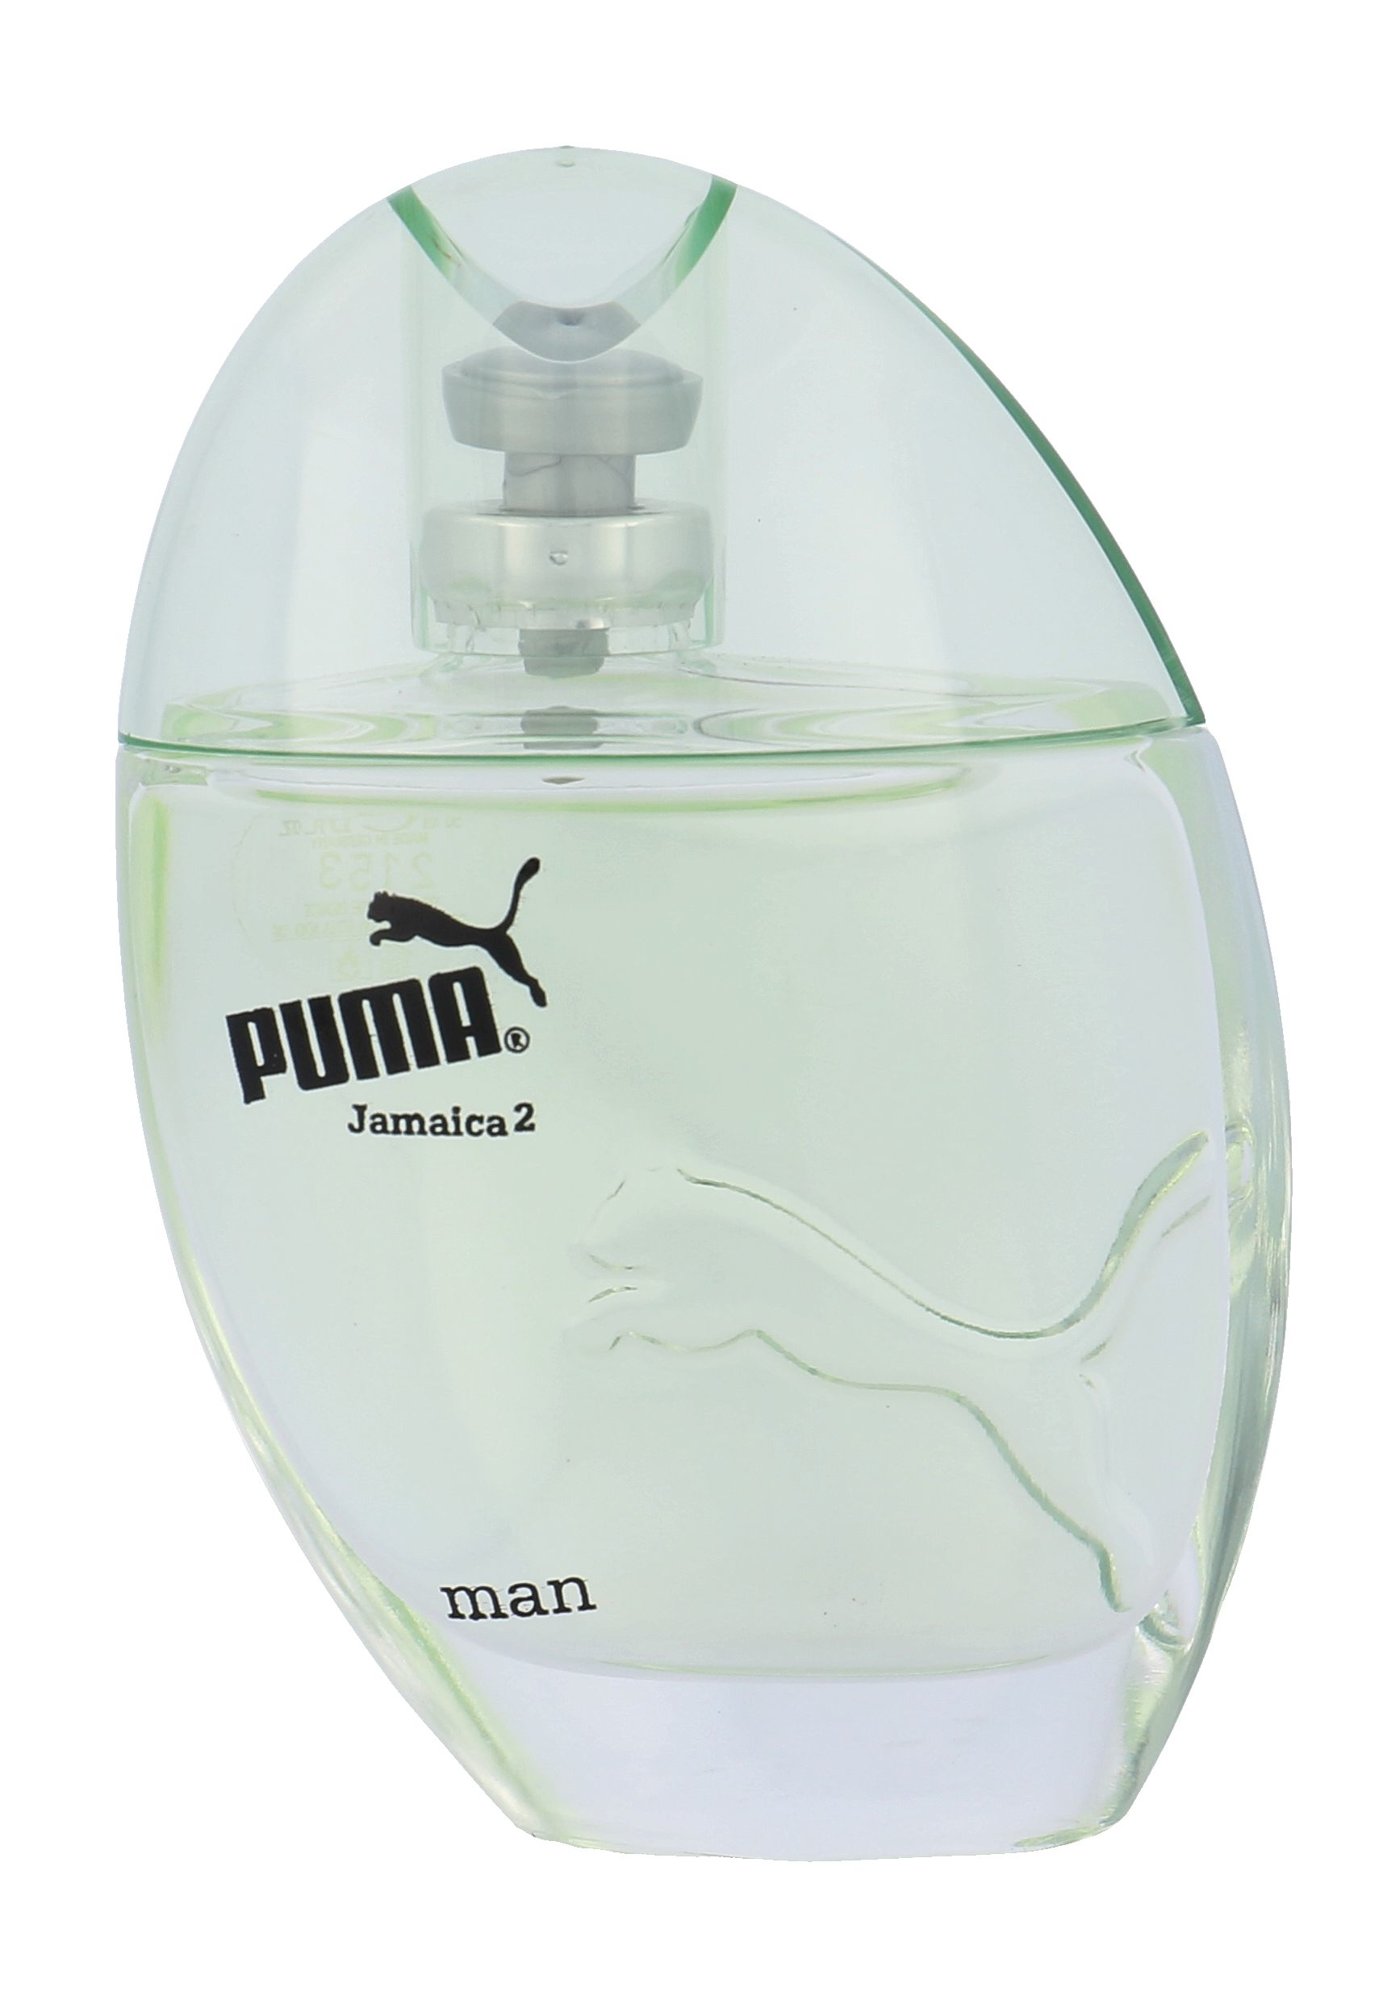 Puma Jamaica 2 50ml vanduo po skutimosi